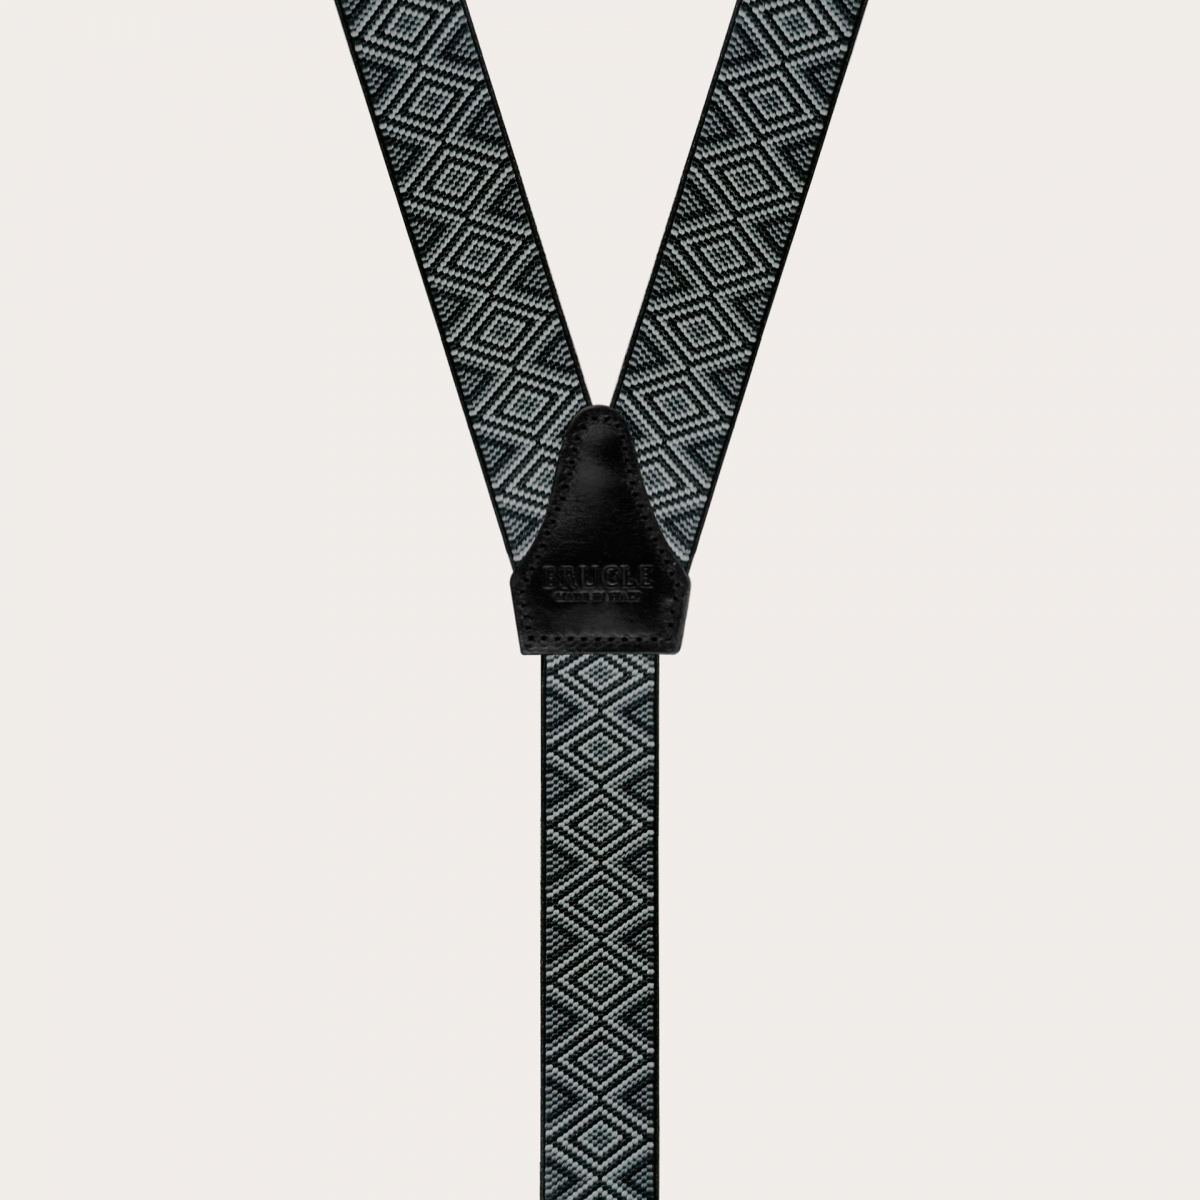 BRUCLE braces suspenders black skinny